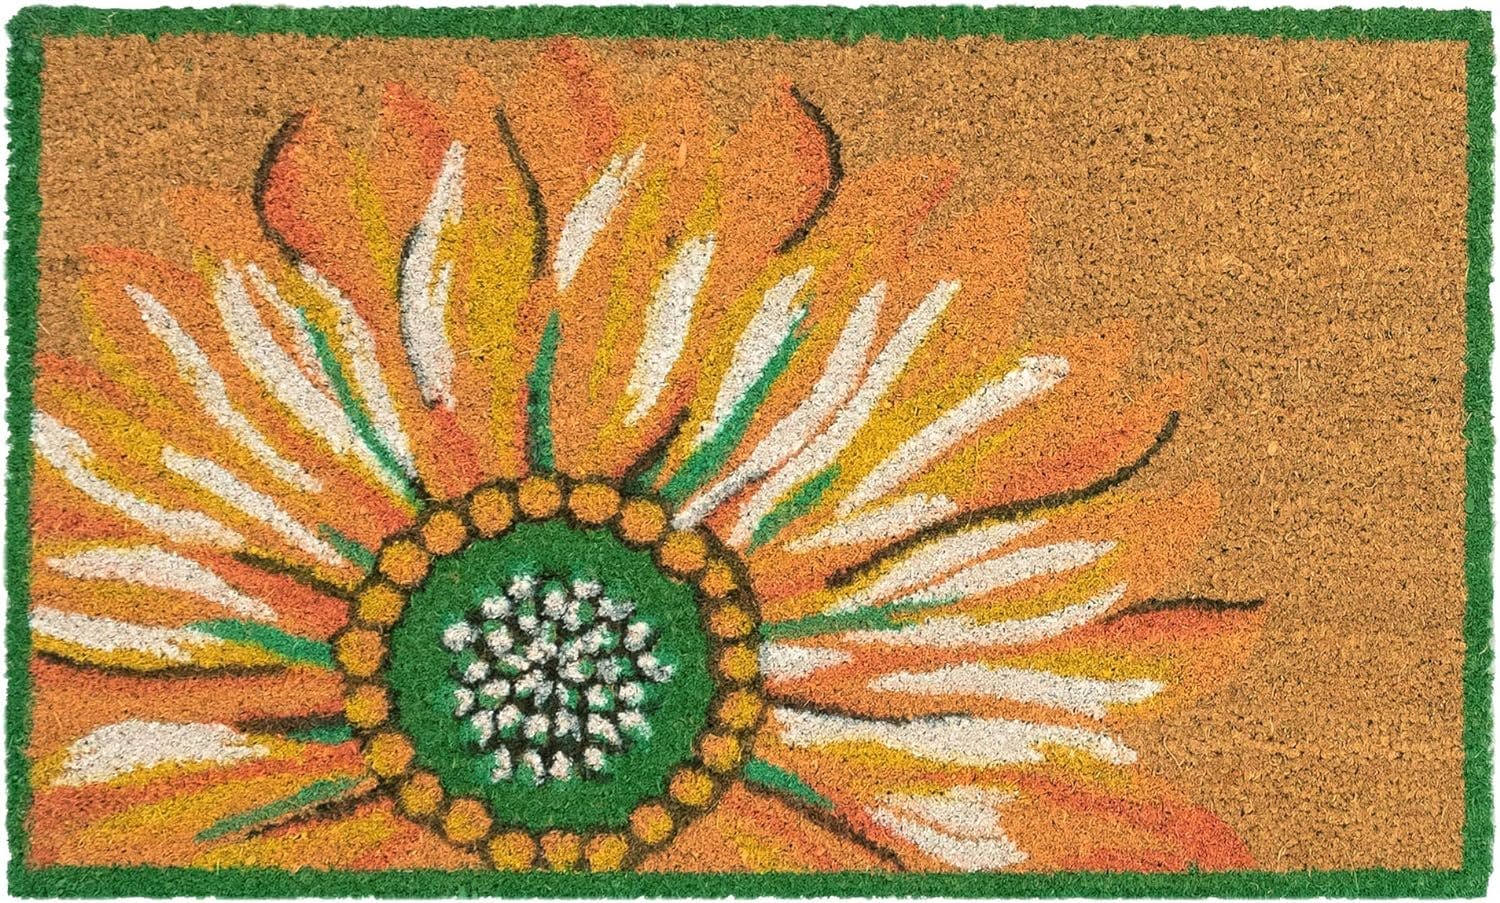 Sunlit Sunflower Coir Outdoor Welcome Mat 36.5" x 24.5"